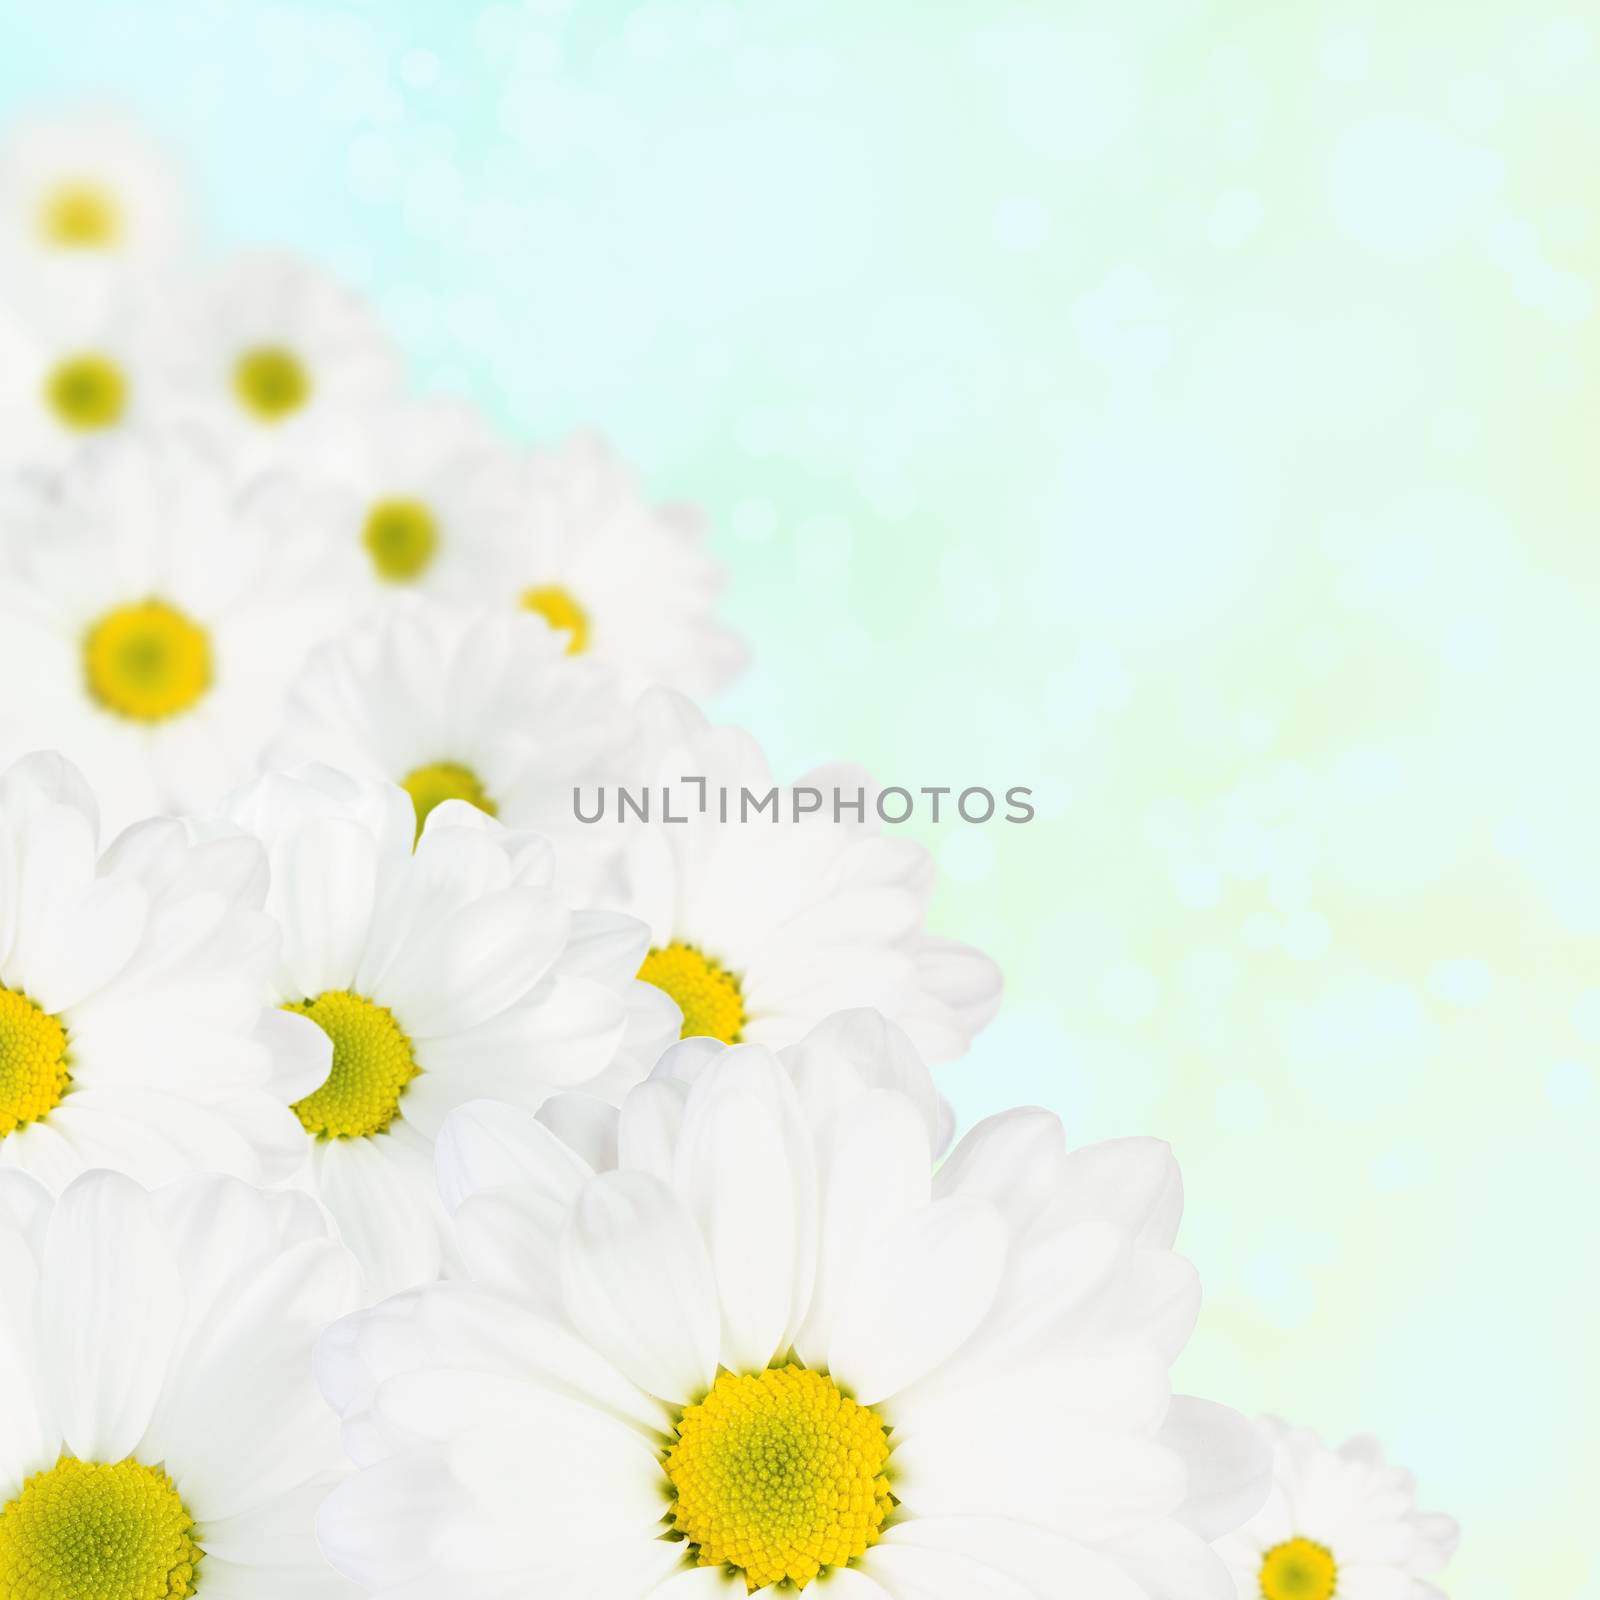 White flower spring background